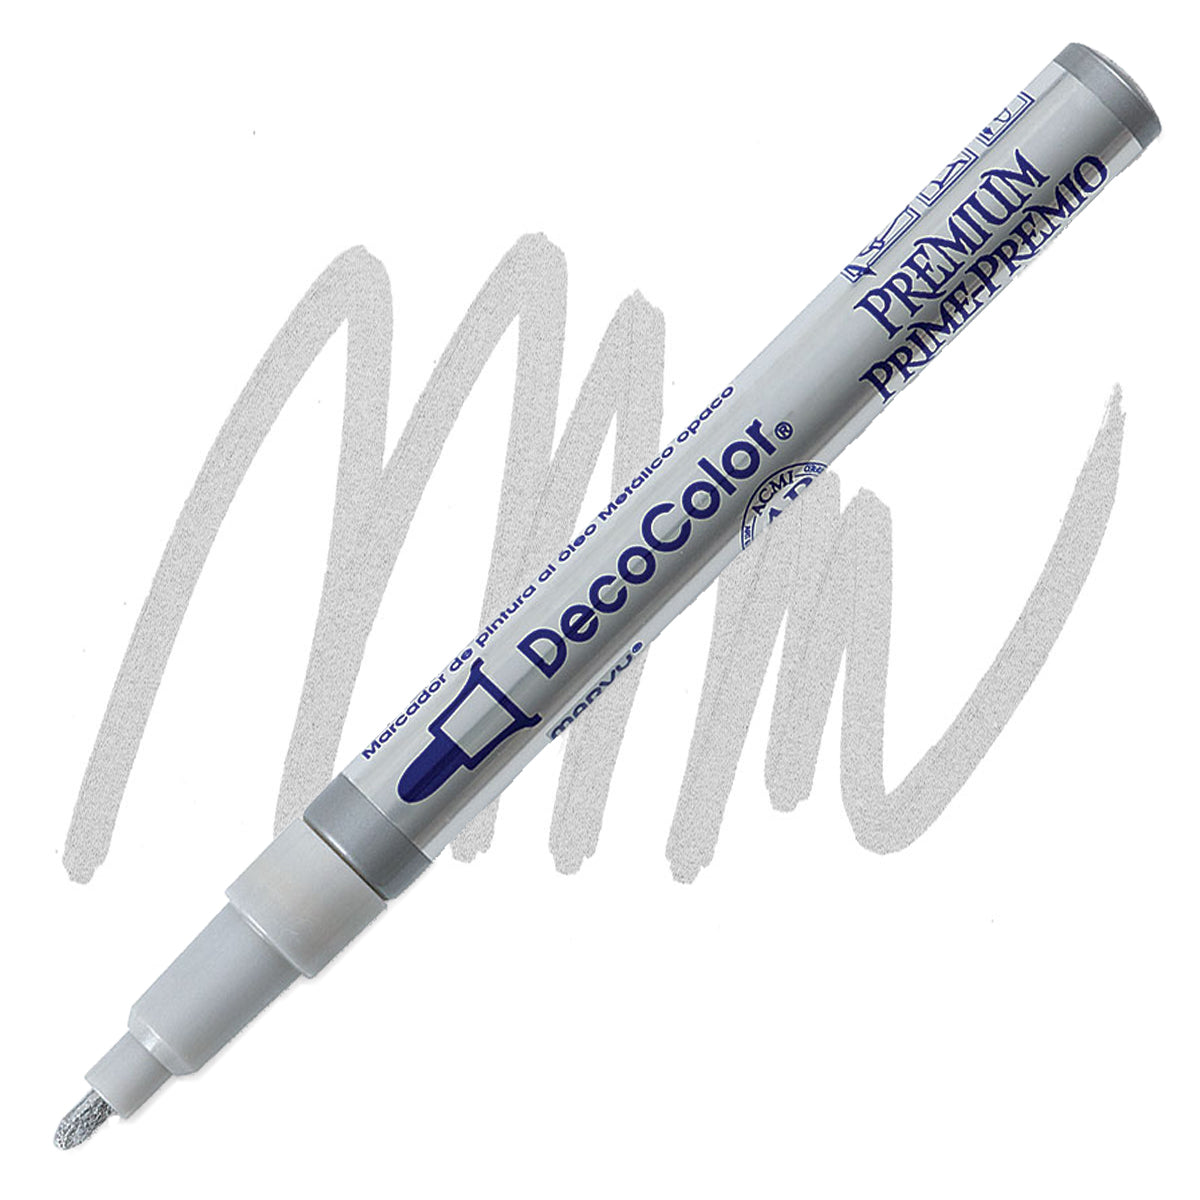 Decocolor Premium Paint Marker, Fine Bullet Tip